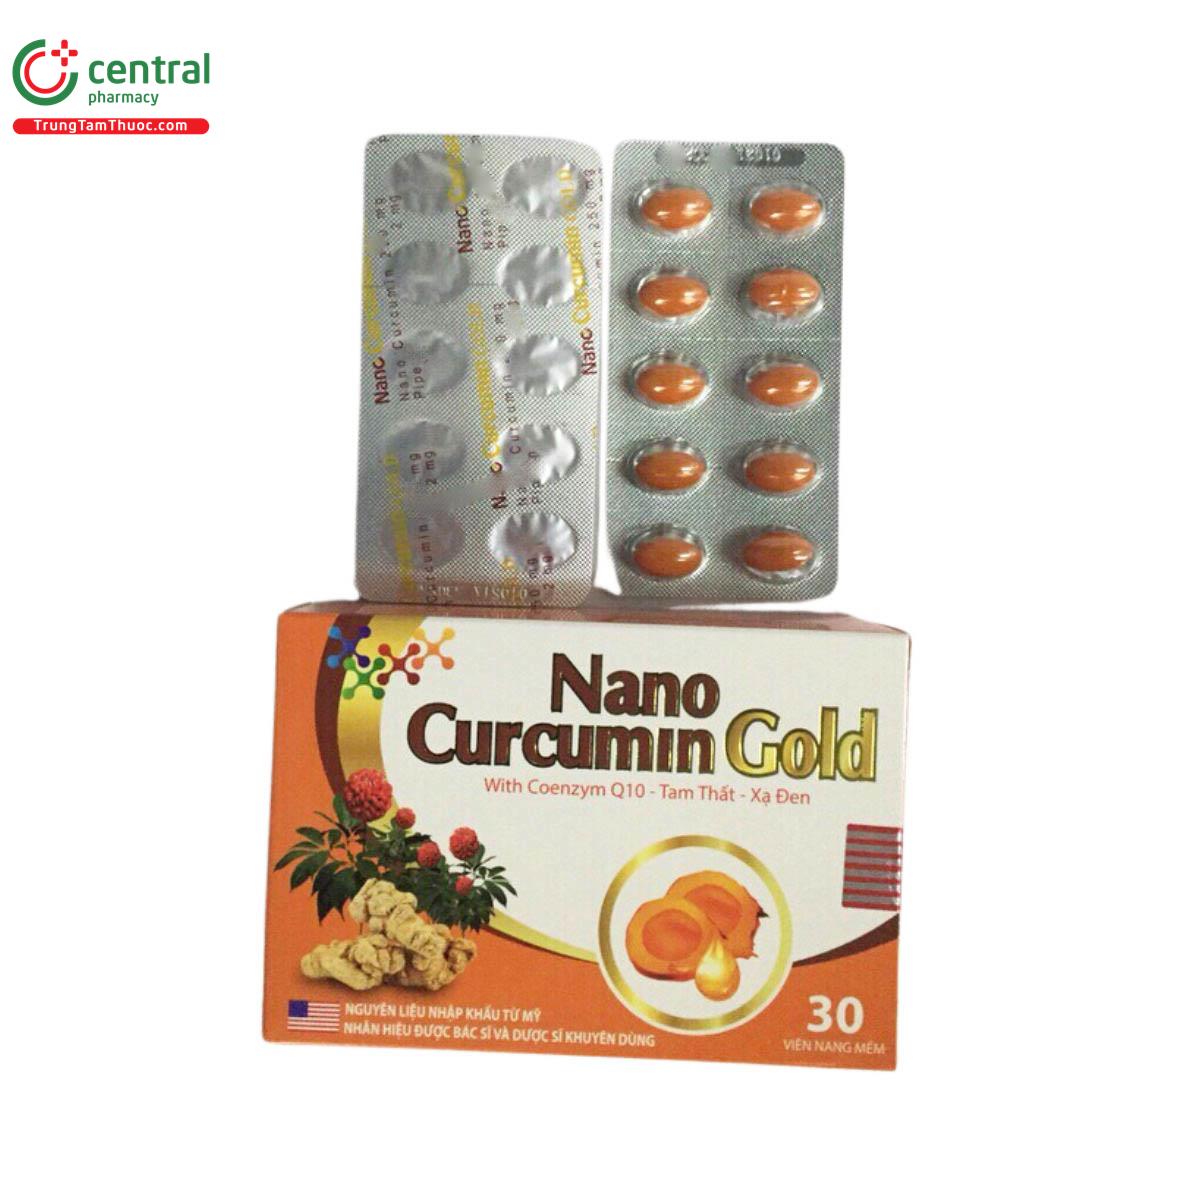 nano curcumin gold mediphar 3 Q6382